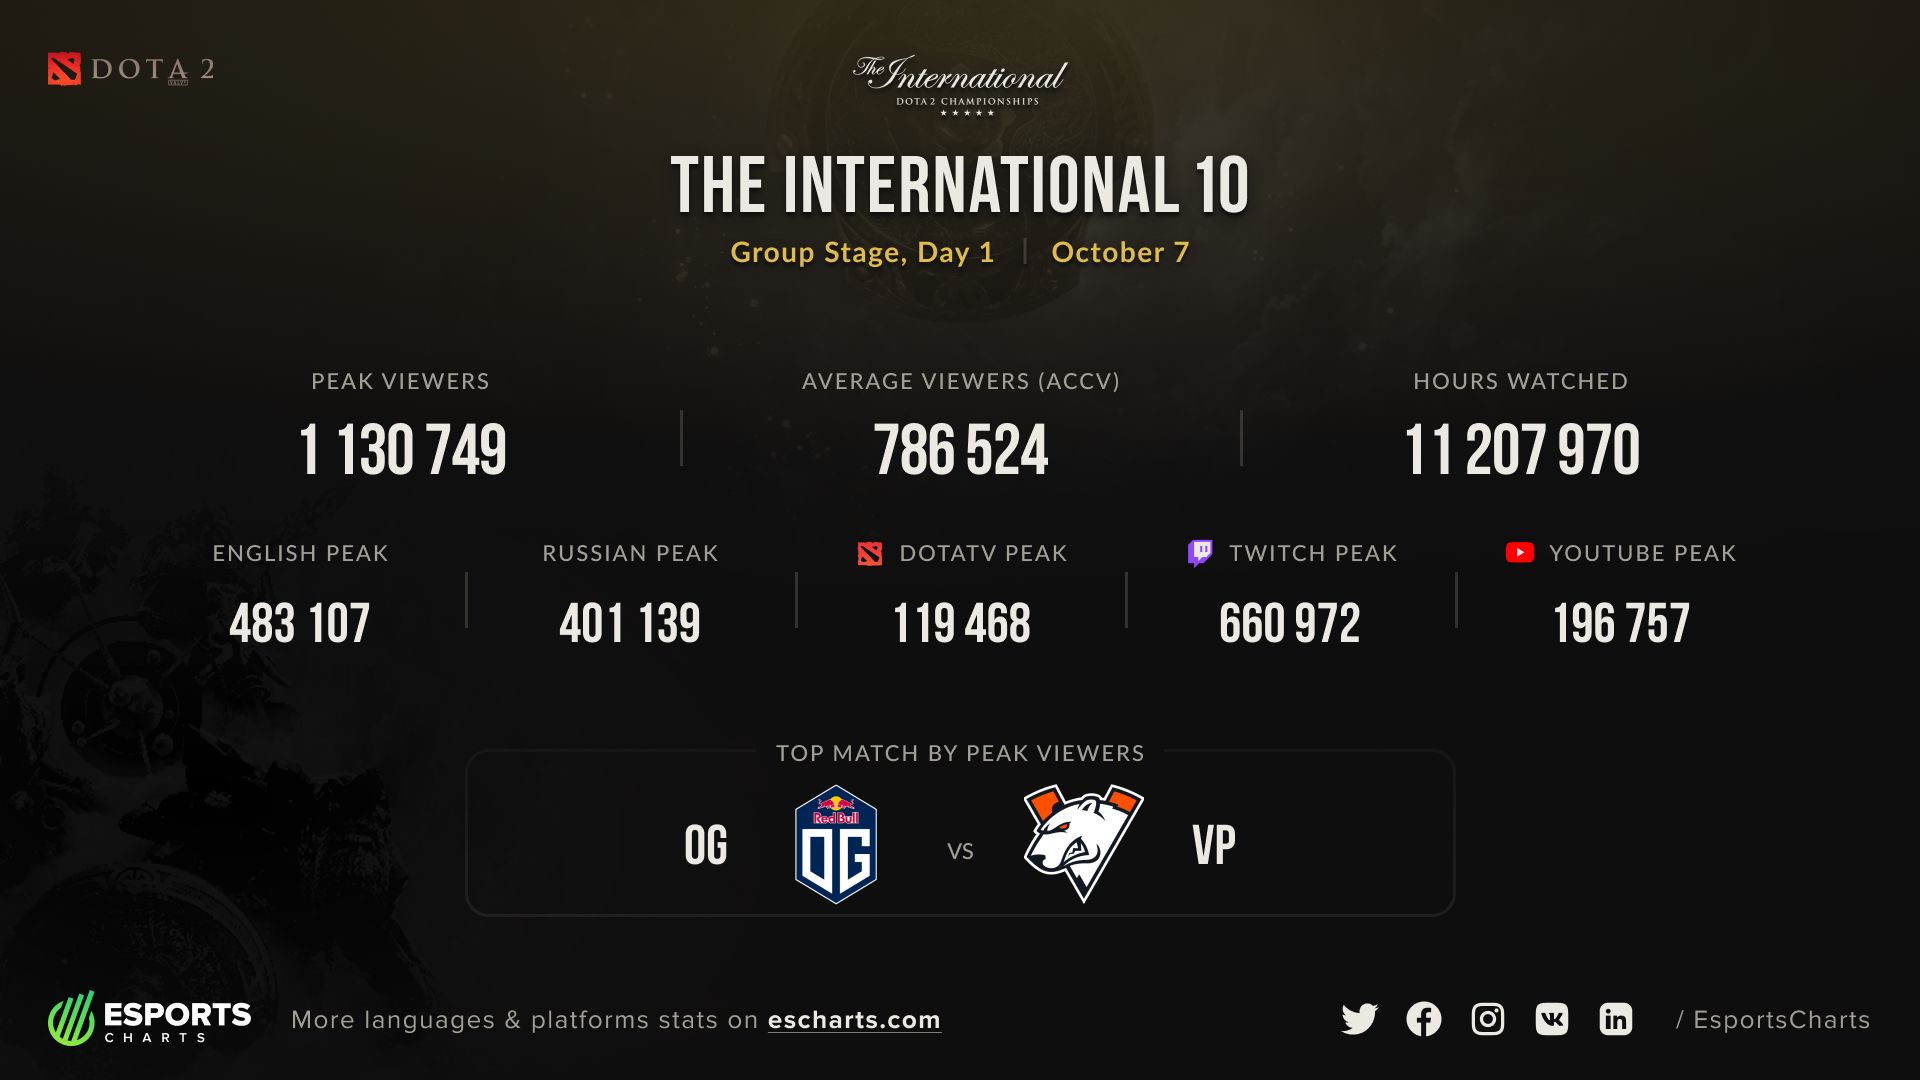 Статистика просмотров The International 10 за первый день.
Источник: Esports Charts